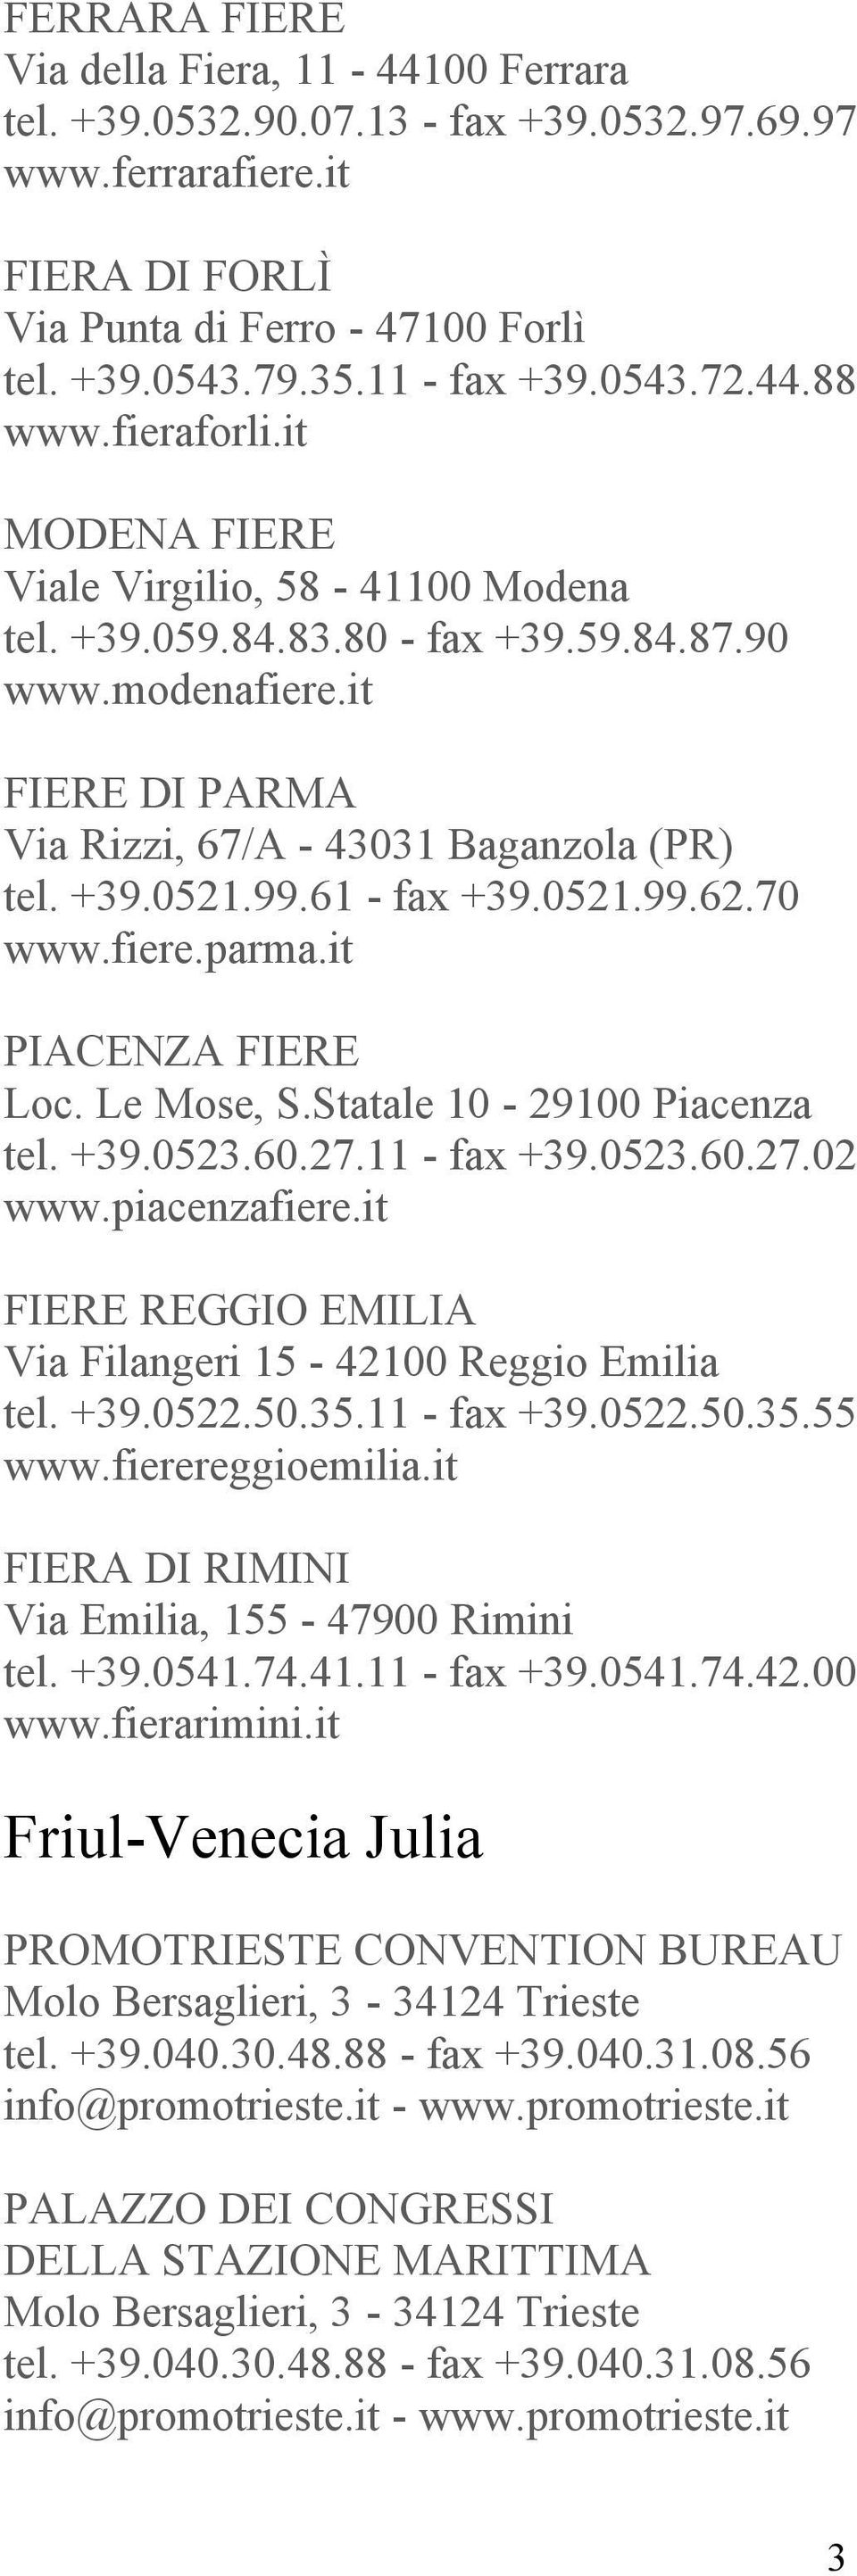 +39.0521.99.61 - fax +39.0521.99.62.70 www.fiere.parma.it PIACENZA FIERE Loc. Le Mose, S.Statale 10-29100 Piacenza tel. +39.0523.60.27.11 - fax +39.0523.60.27.02 www.piacenzafiere.